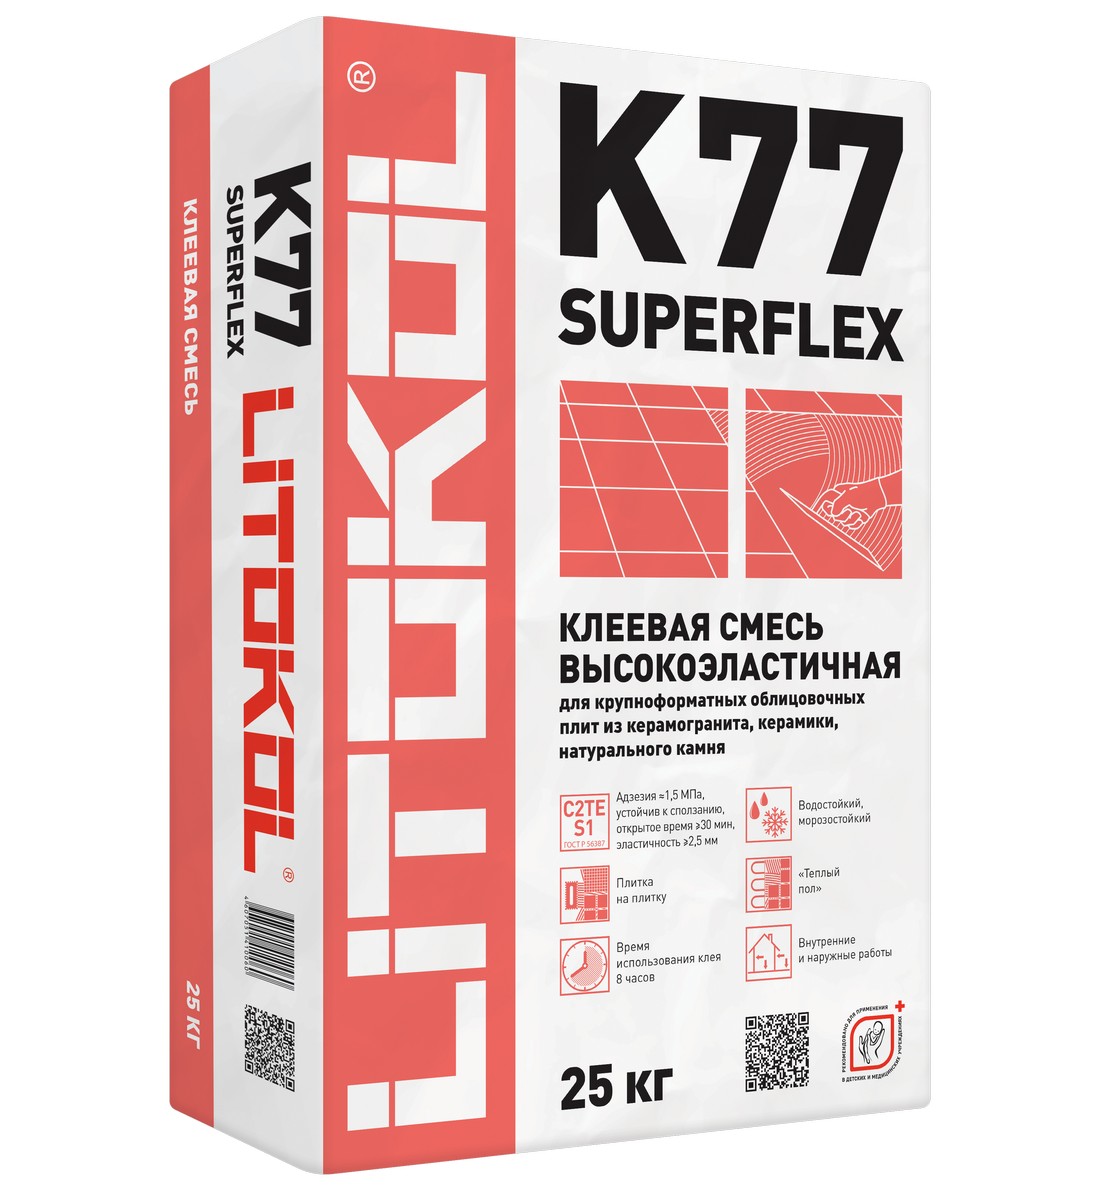 Клей для плитки Litokol SUPERFLEX K77 (мешок 25 кг) L0075160002